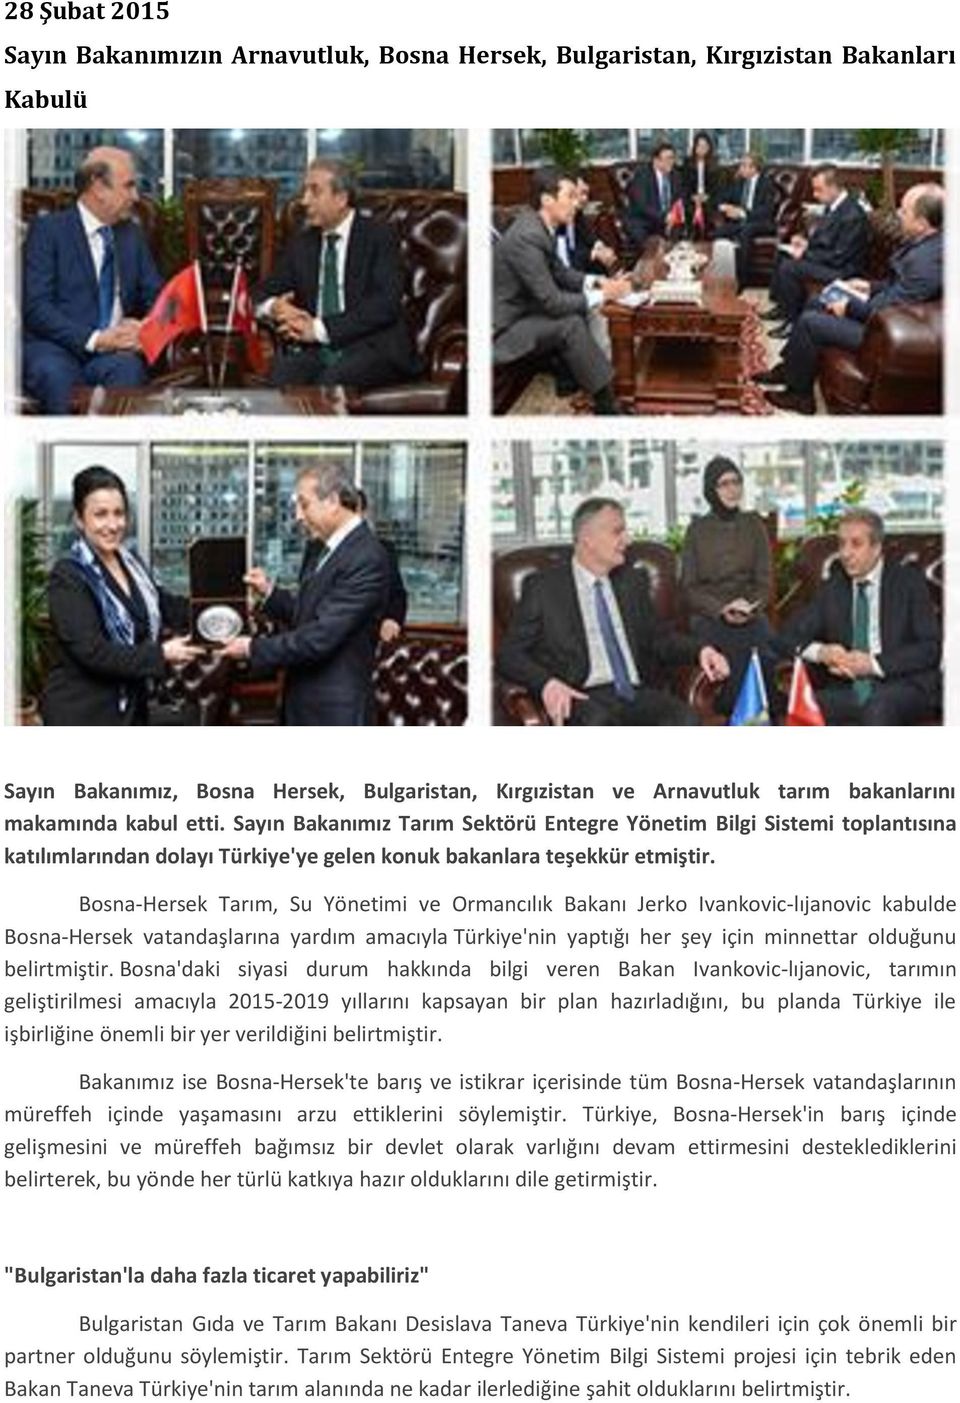 Bosna-Hersek Tarım, Su Yönetimi ve Ormancılık Bakanı Jerko Ivankovic-lıjanovic kabulde Bosna-Hersek vatandaşlarına yardım amacıyla Türkiye'nin yaptığı her şey için minnettar olduğunu belirtmiştir.